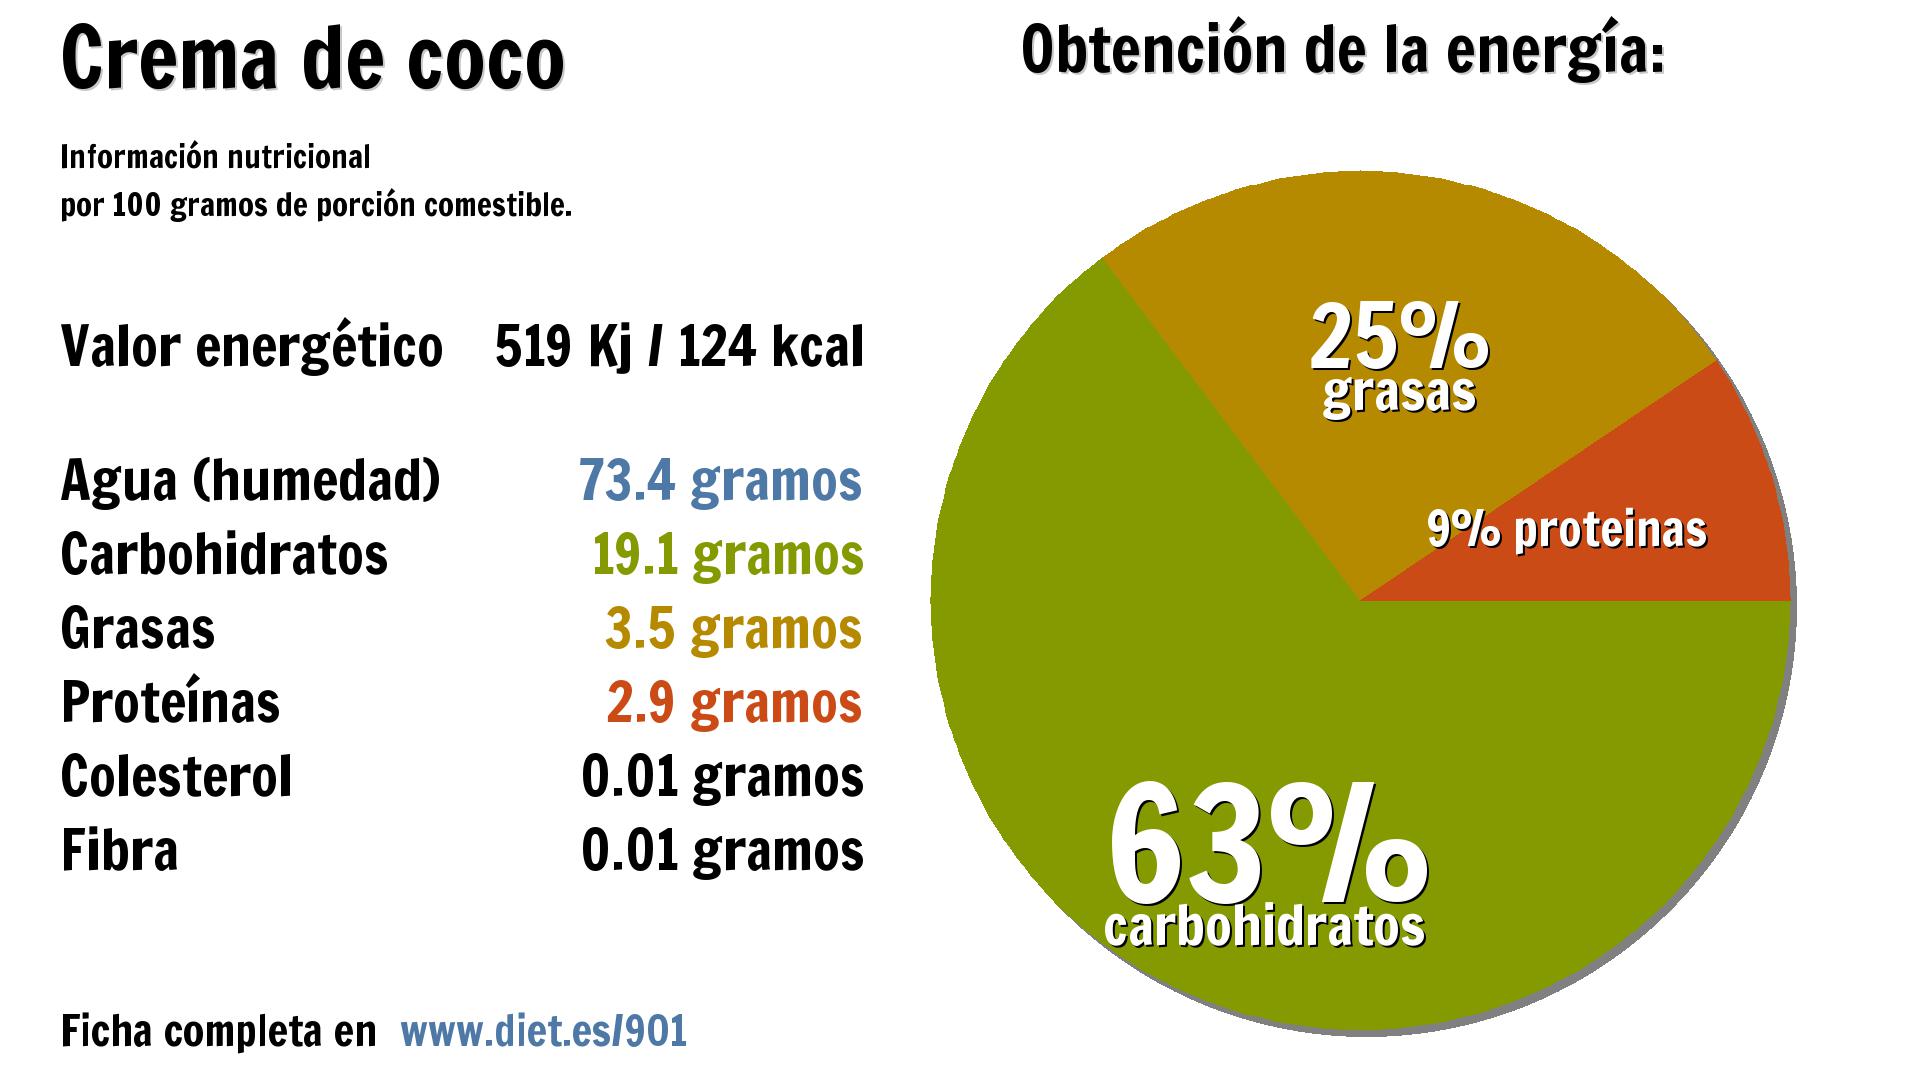 Crema de coco: energía 519 Kj, agua 73 g., carbohidratos 19 g., grasas 4 g. y proteínas 3 g.